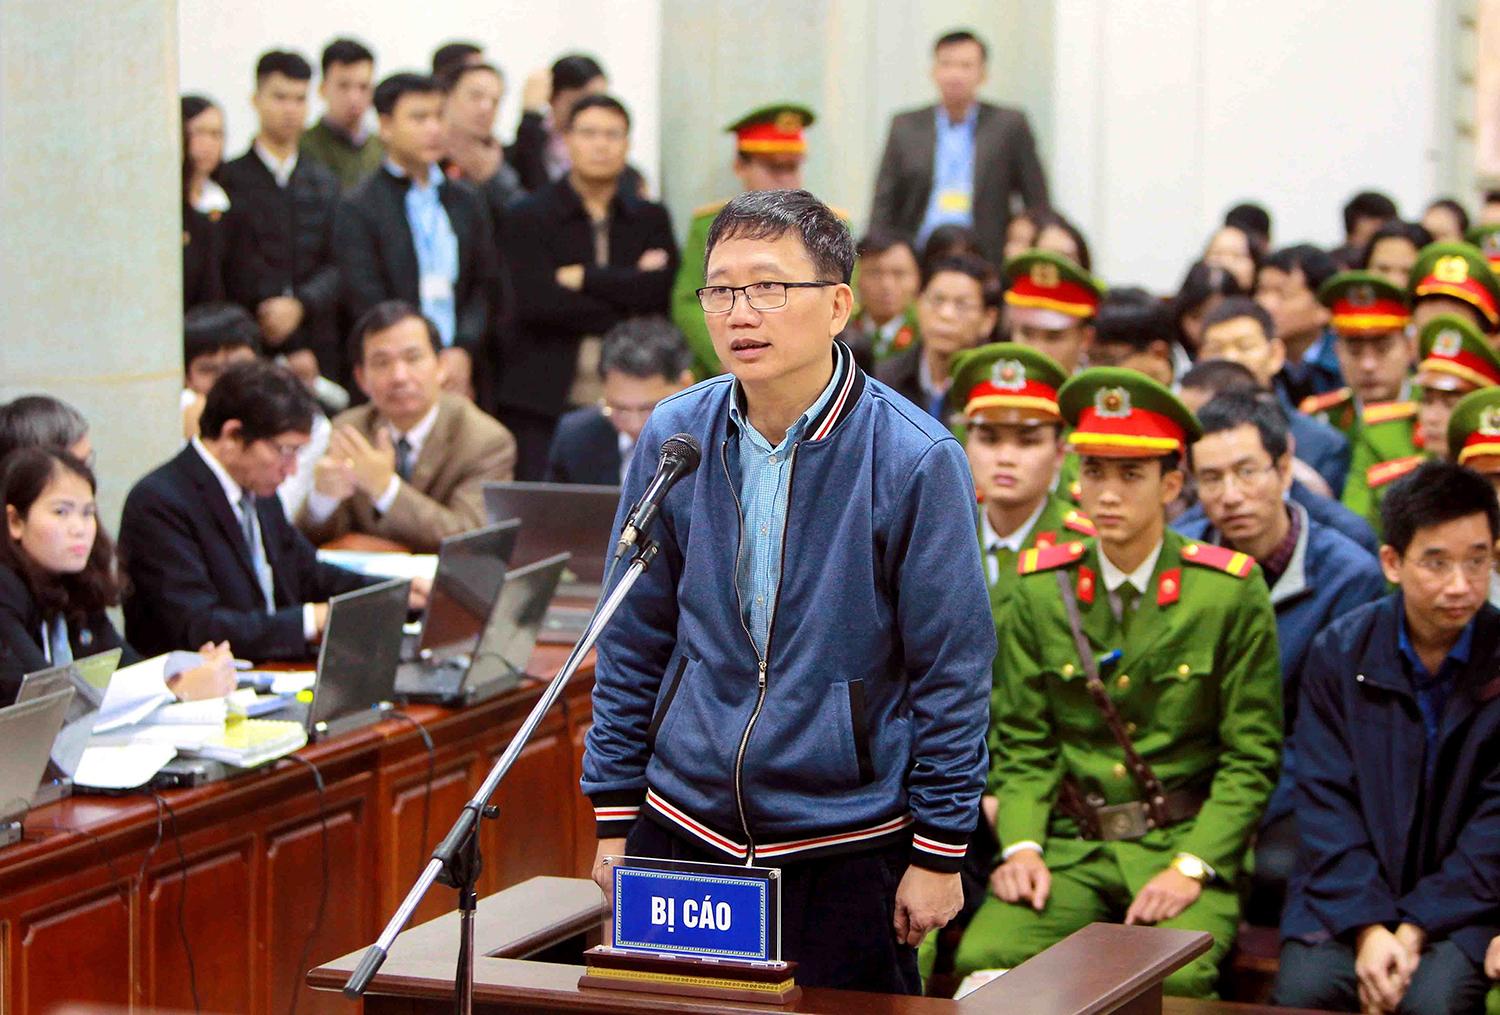 8. január 2018 Hanoj, Vietnam: Trinh Xuan Thanh vypovedá pred súdom, kde čelí obvineniam z korupcie.